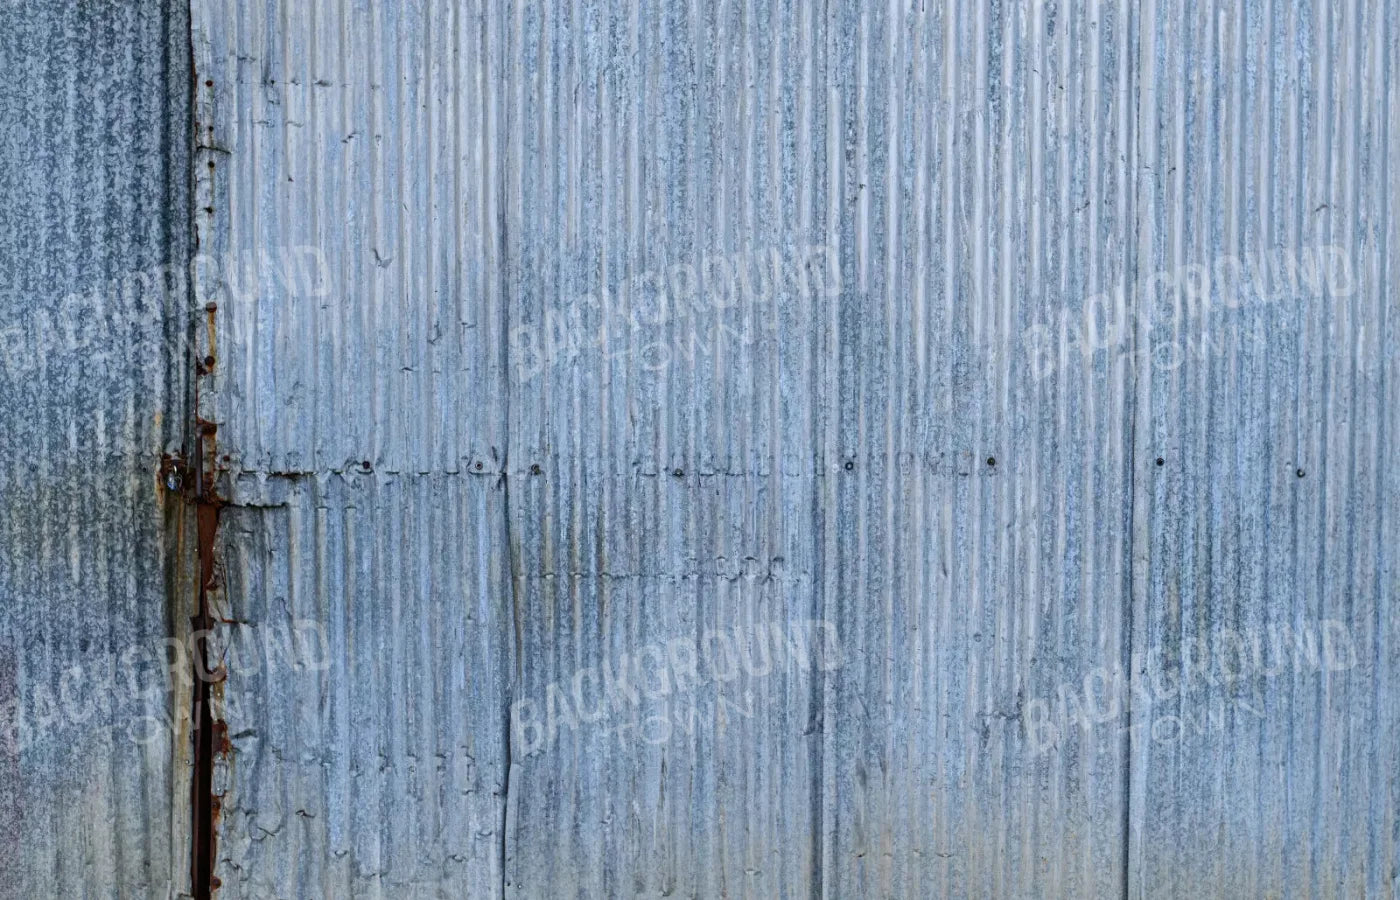 Barn Steel 12X8 Ultracloth ( 144 X 96 Inch ) Backdrop